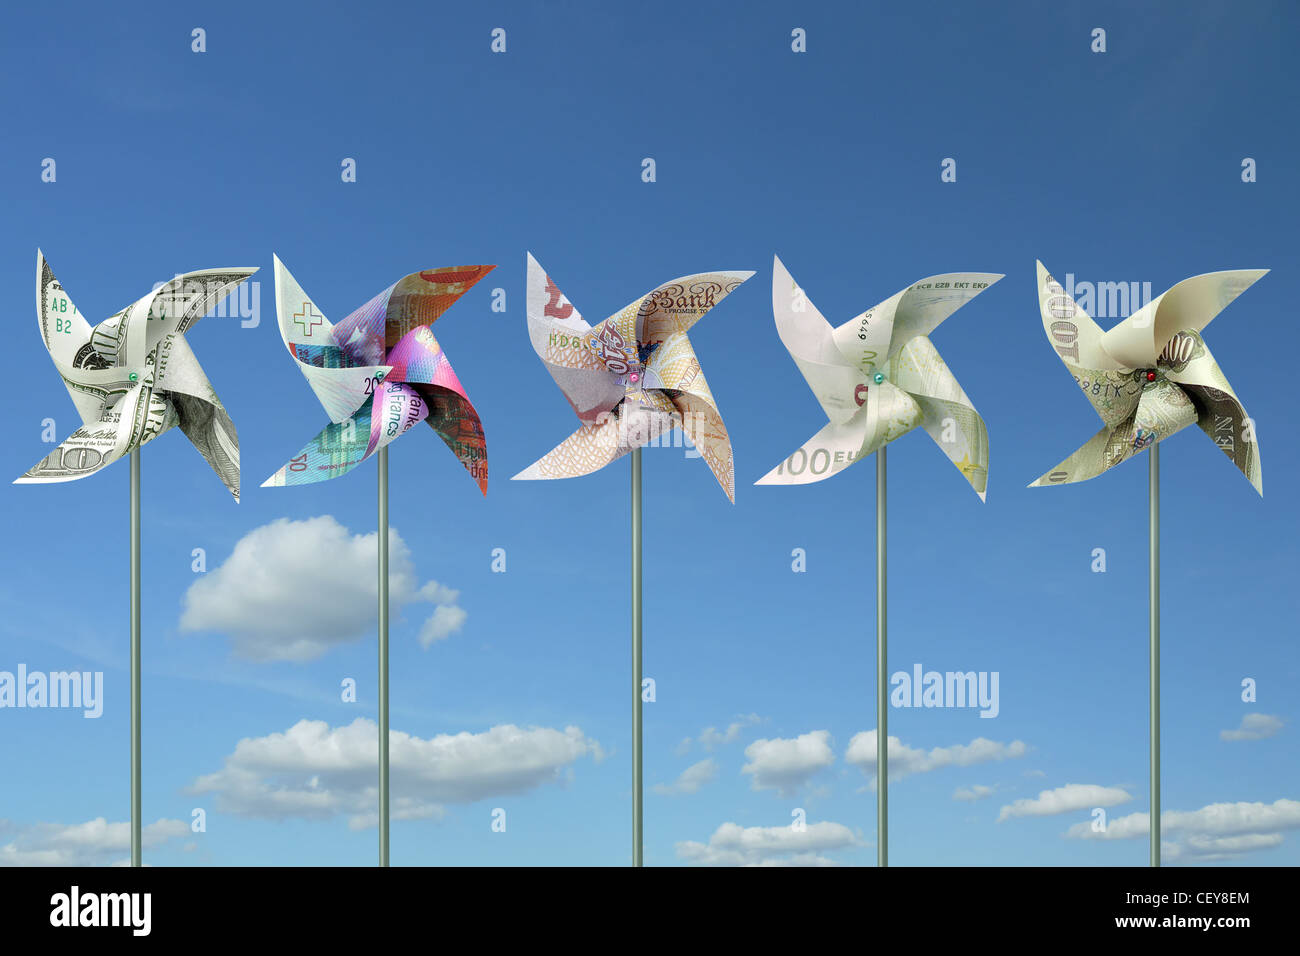 Spielzeug-Windmühlen aus fünf großen Welt Banknoten über blauen Himmel geschnitten Stockfoto